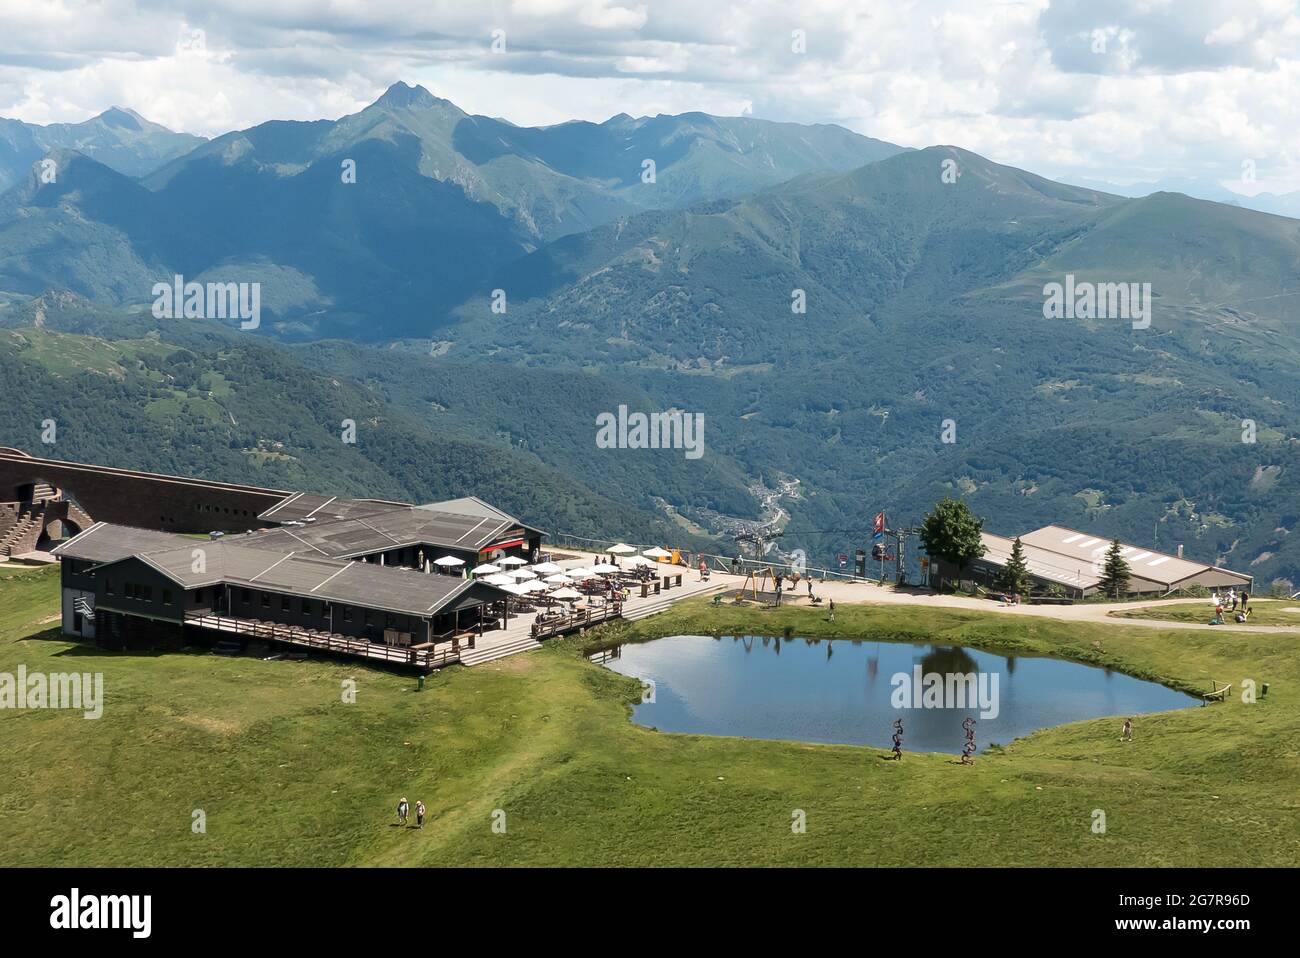 Switzerland: Monte Tamaro views Stock Photo